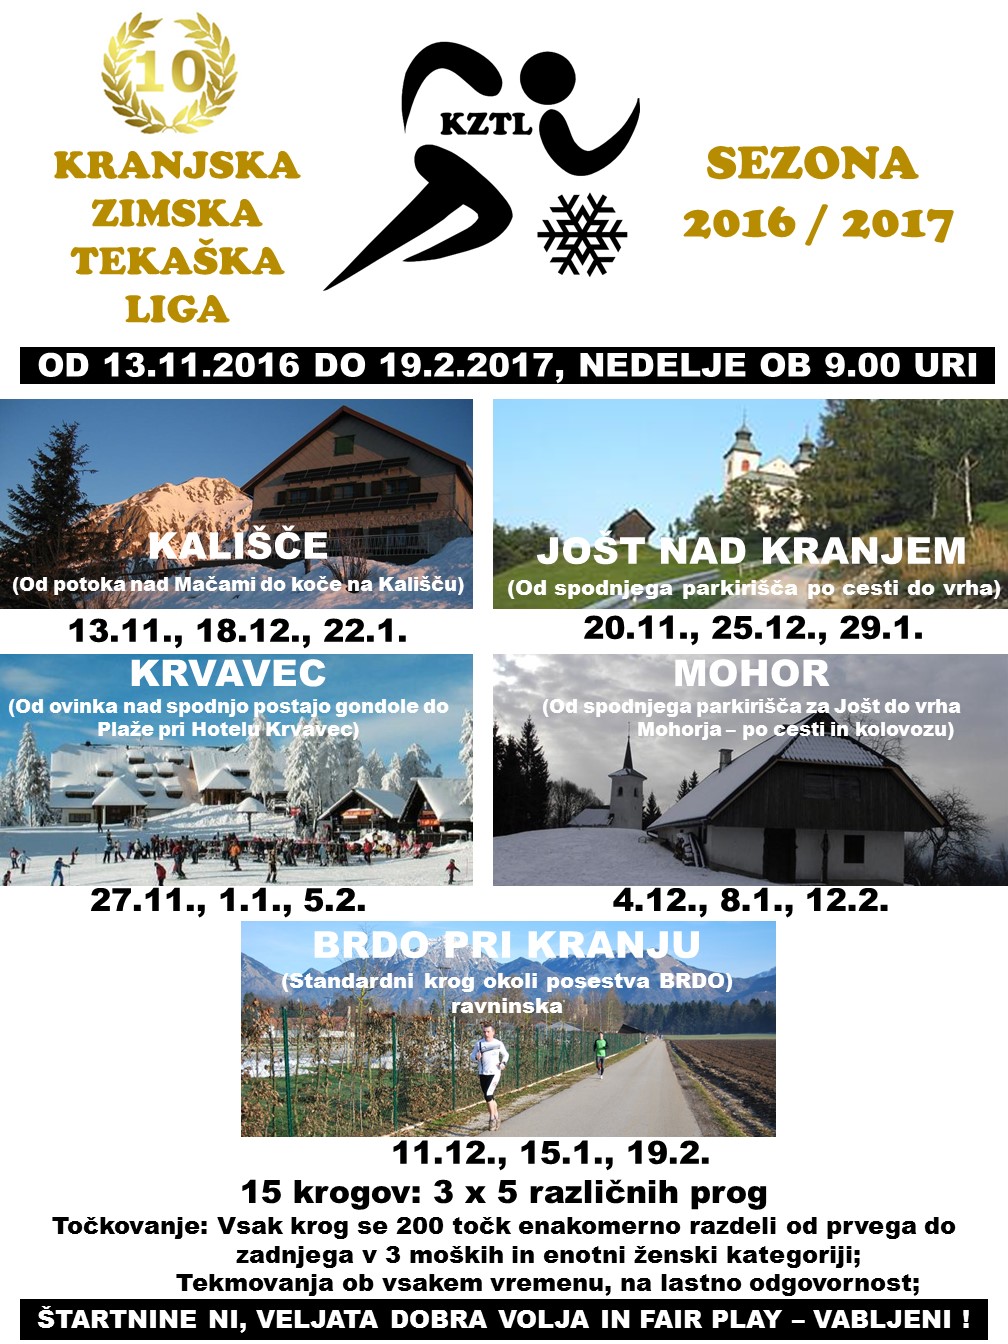 KRANJSKA ZIMSKA TEKAŠKA LIGA 2016-17.jpg